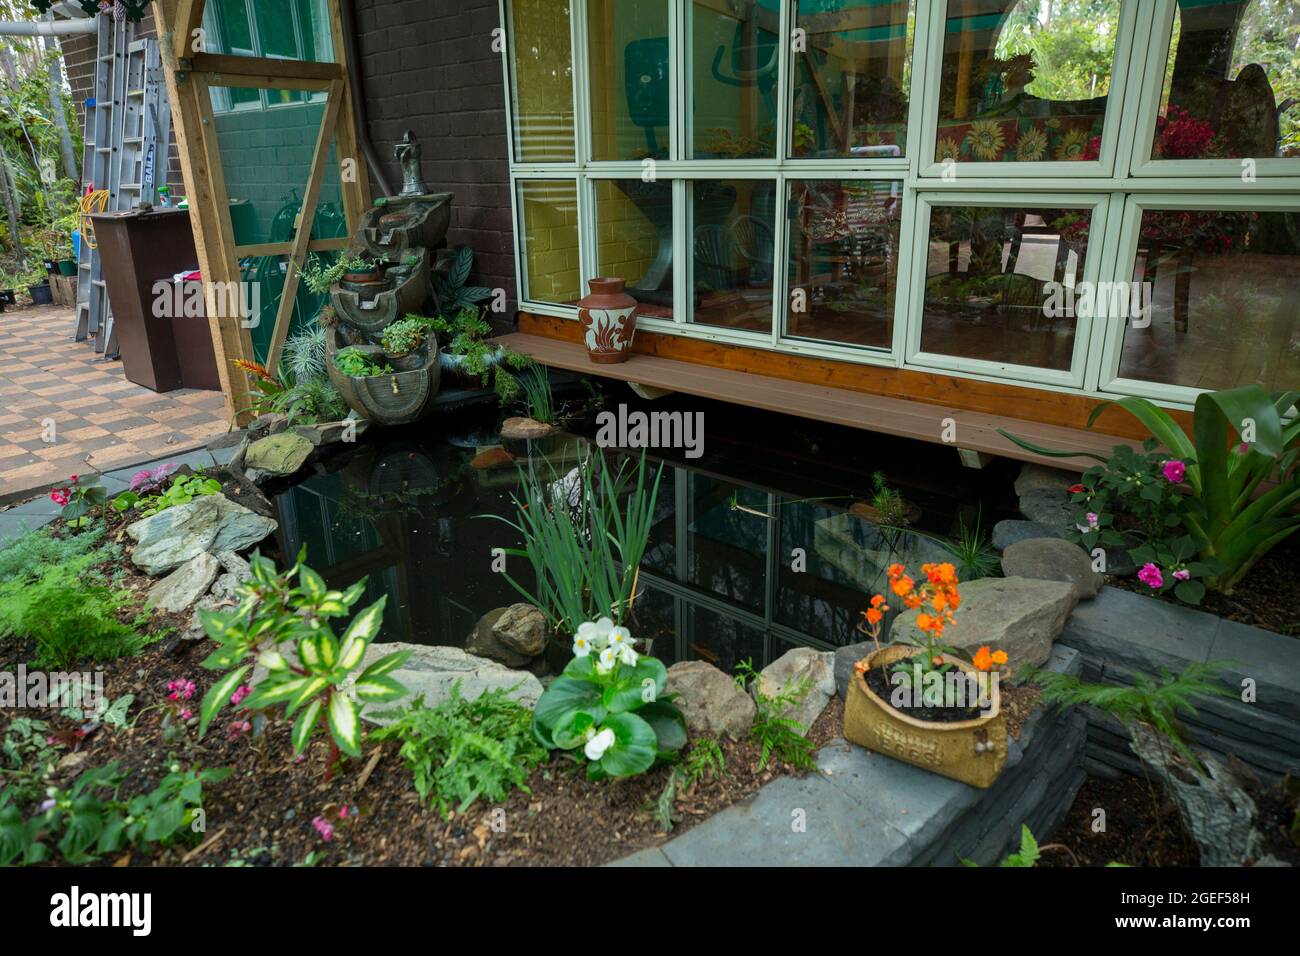 Jardín ajardinado con agua / estanque de peces rodeado de pared de ladrillo decorativo y camas elevadas jardín con helechos y flores de colores, Australia Foto de stock